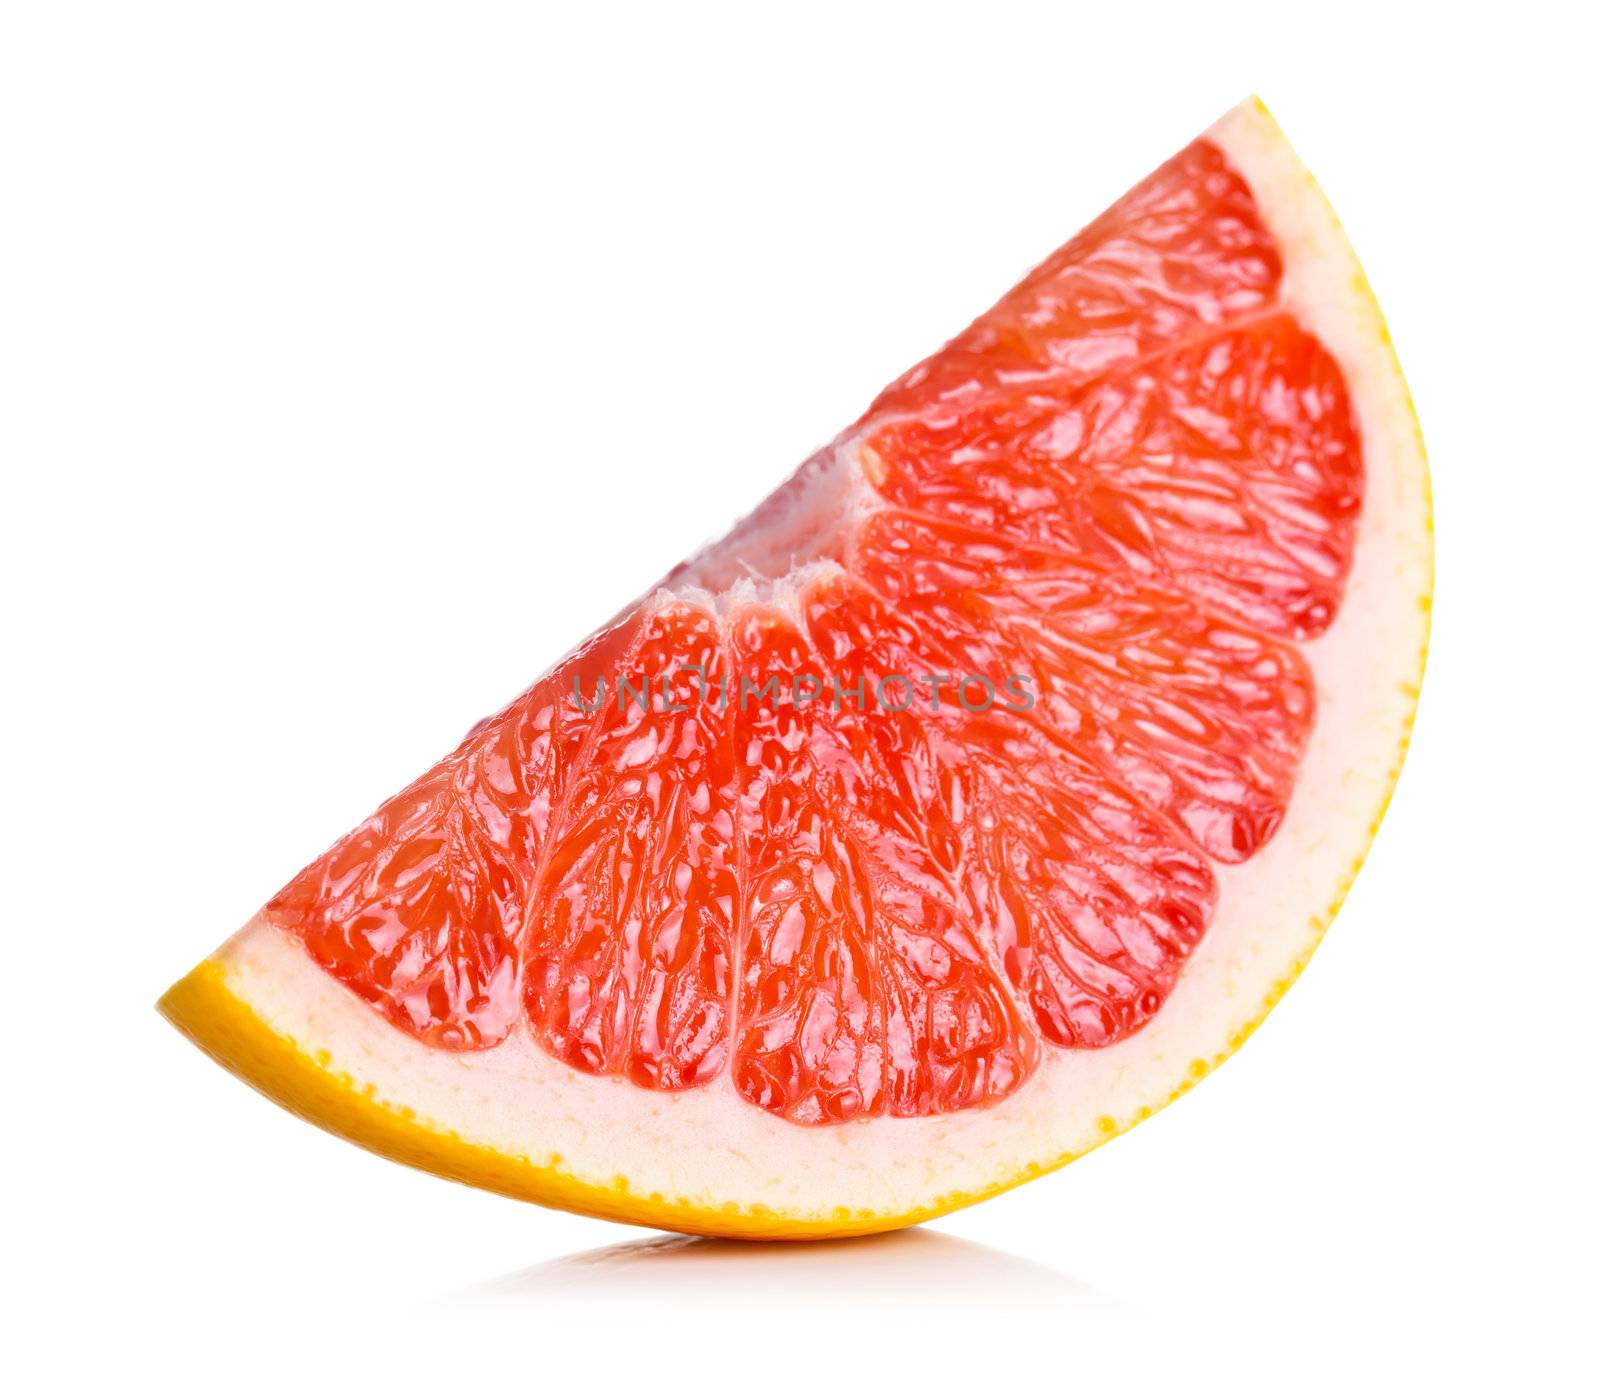 Grapefruit slice on white background. Fresh and juicy